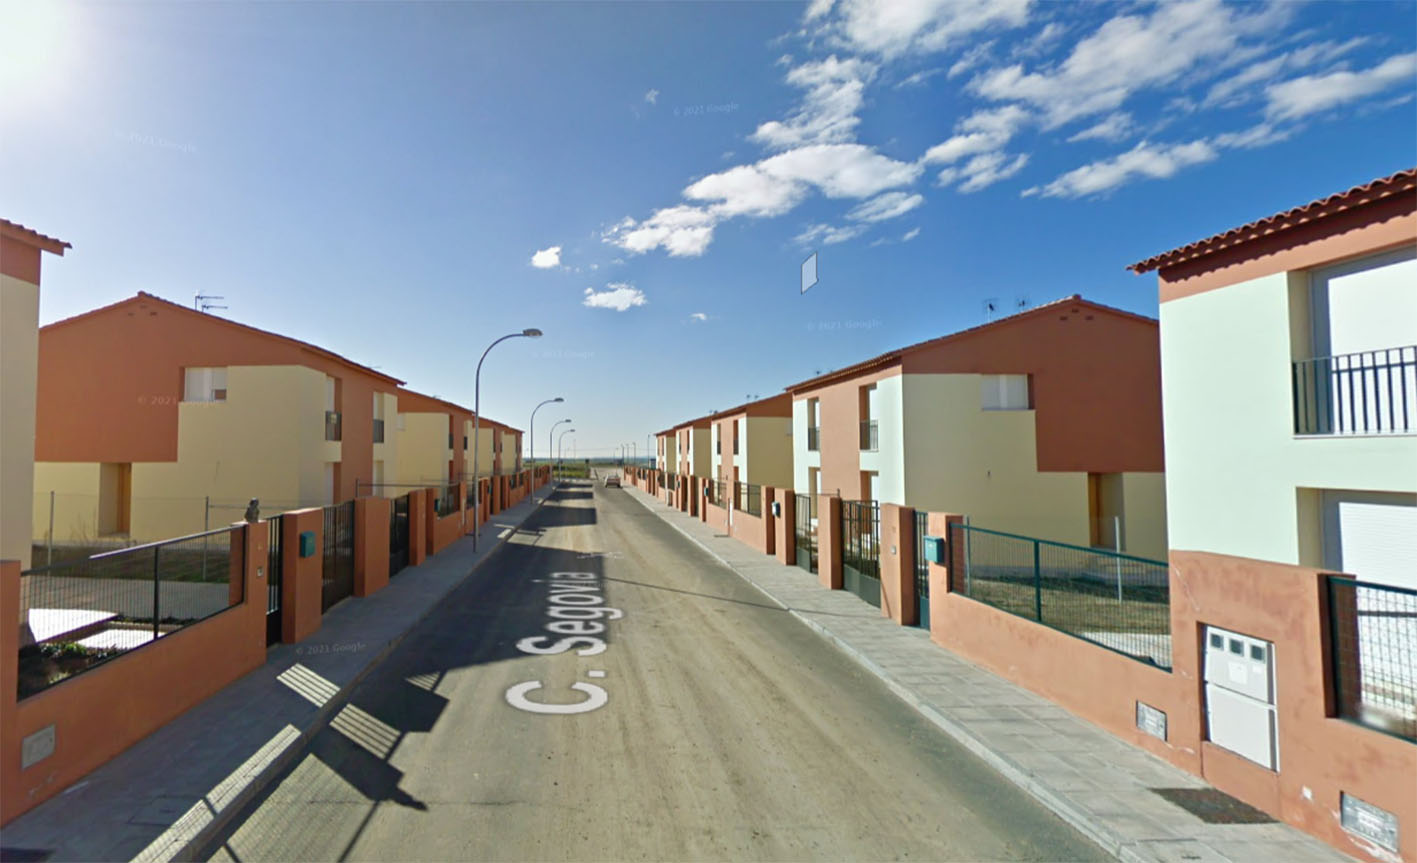 Image de archivo de la calle Segovia, en Novés.